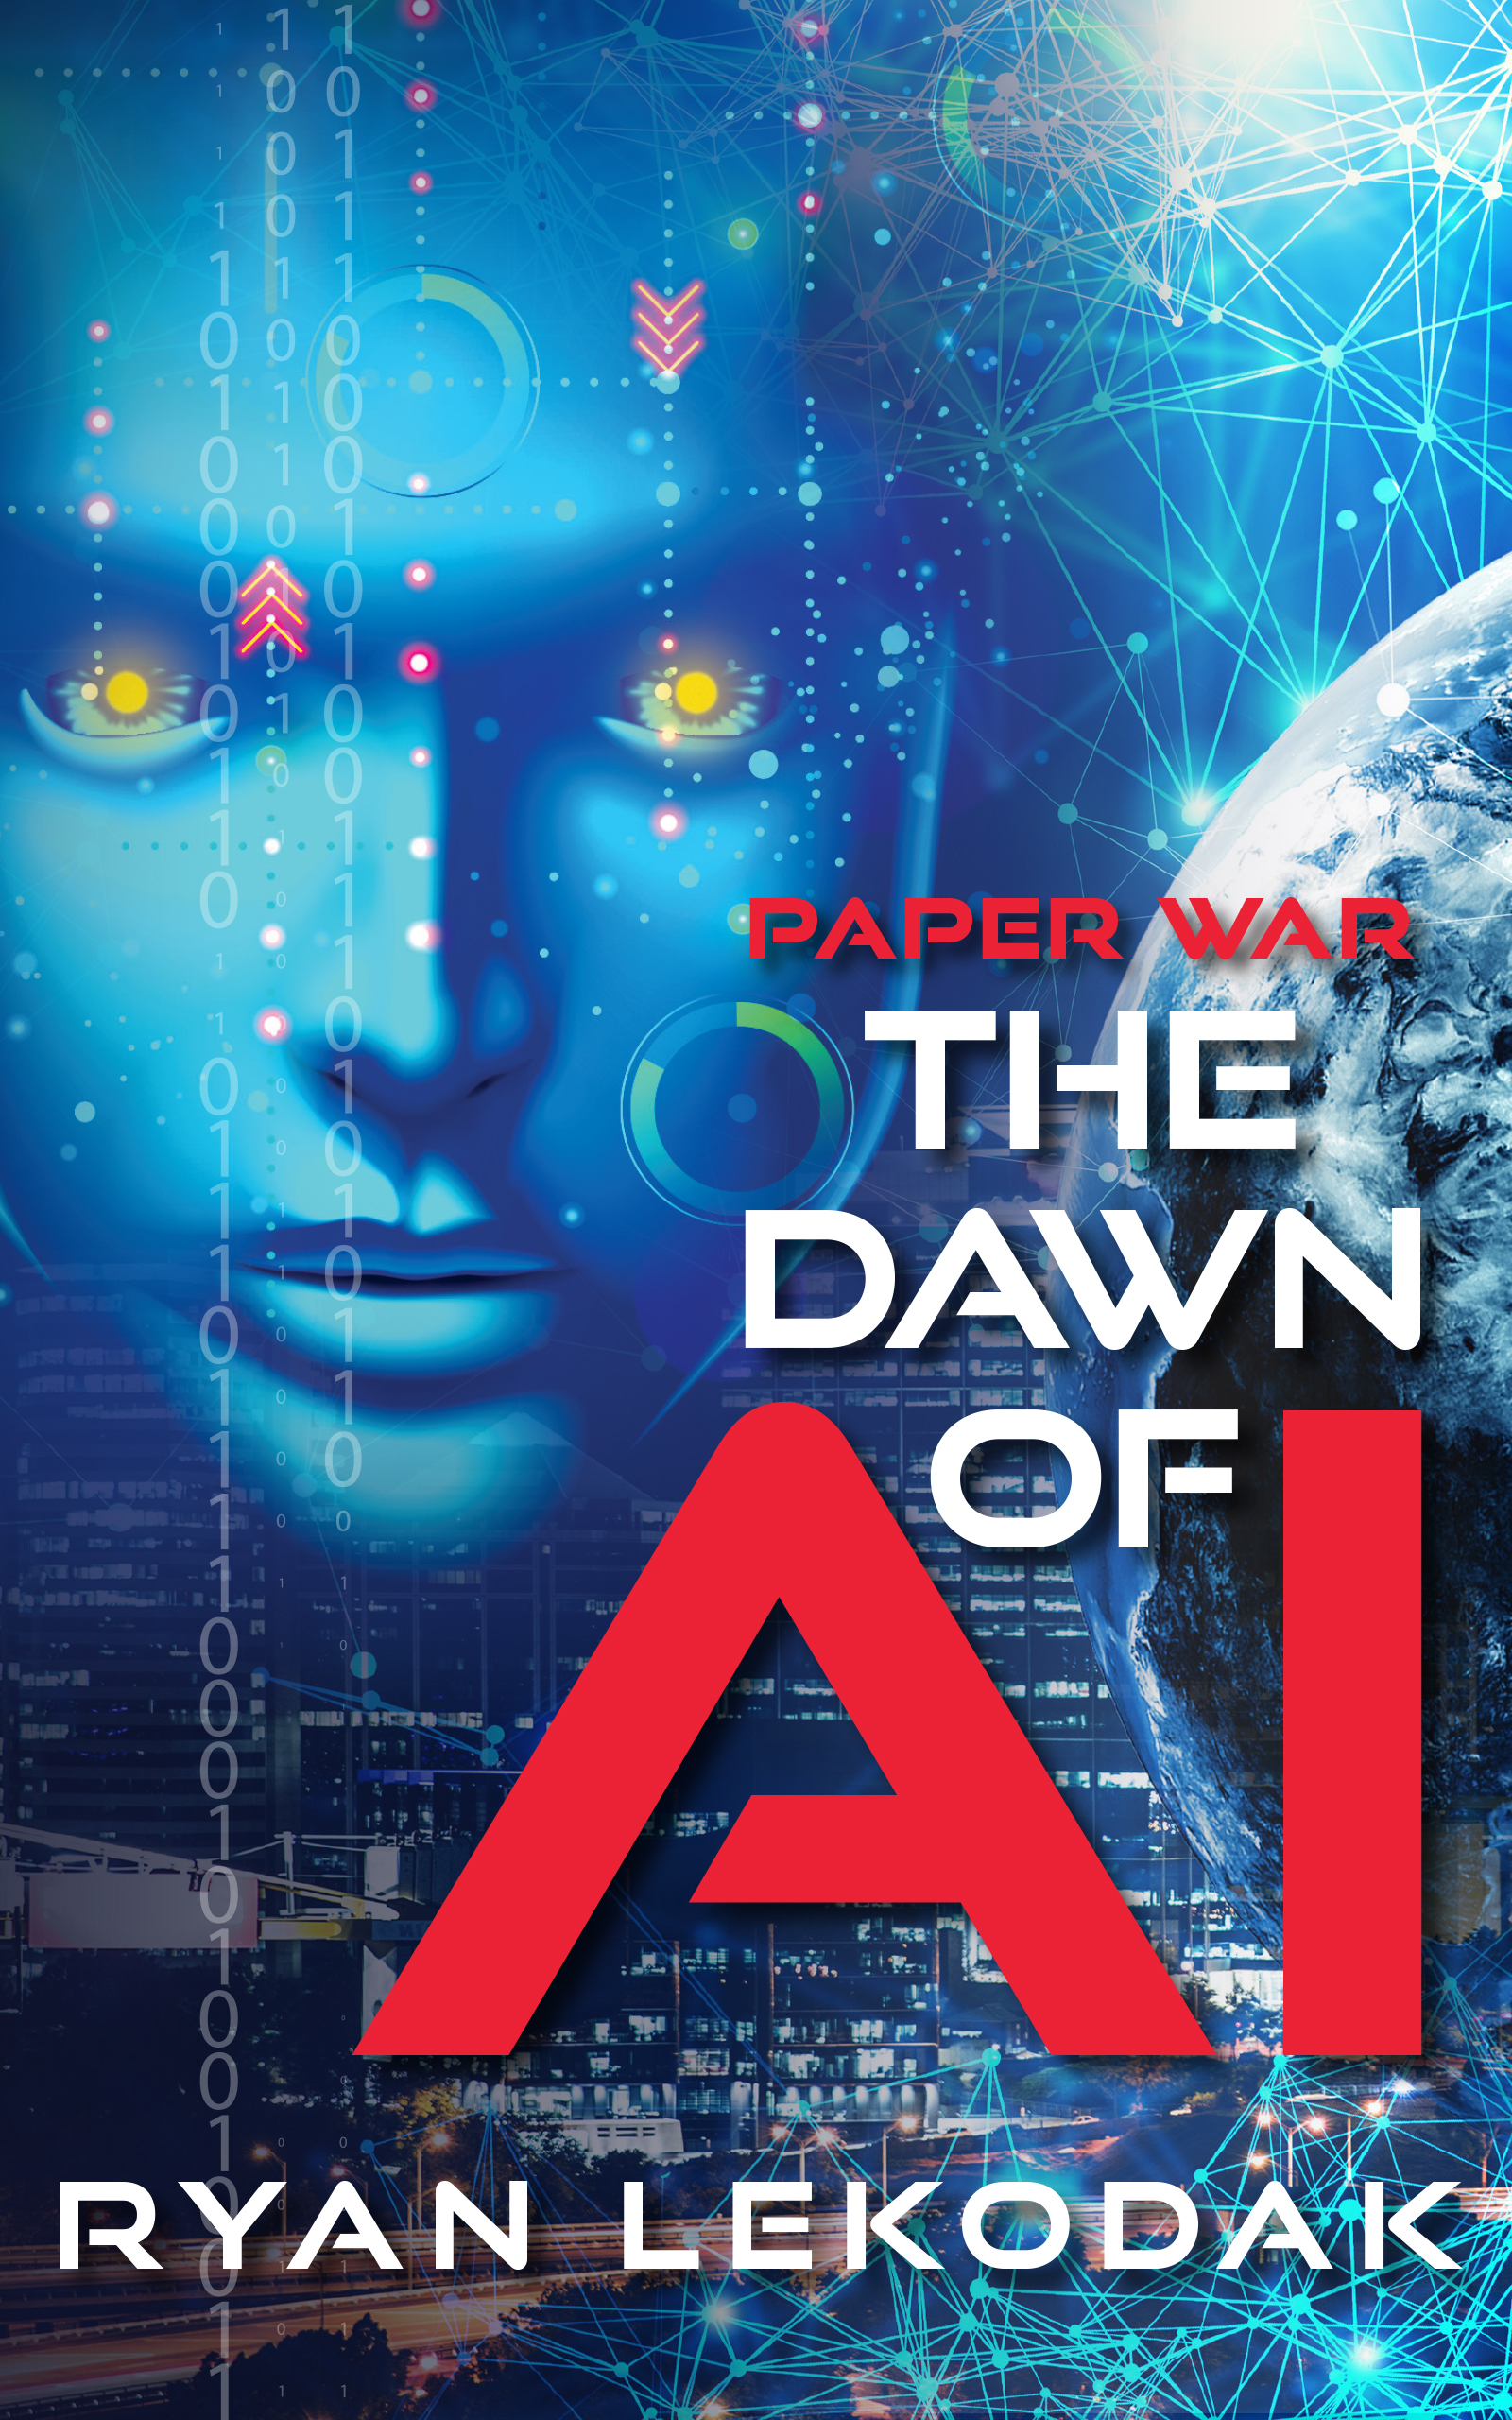 The Dawn of AI (Paperwar) by Ryan LeKodak